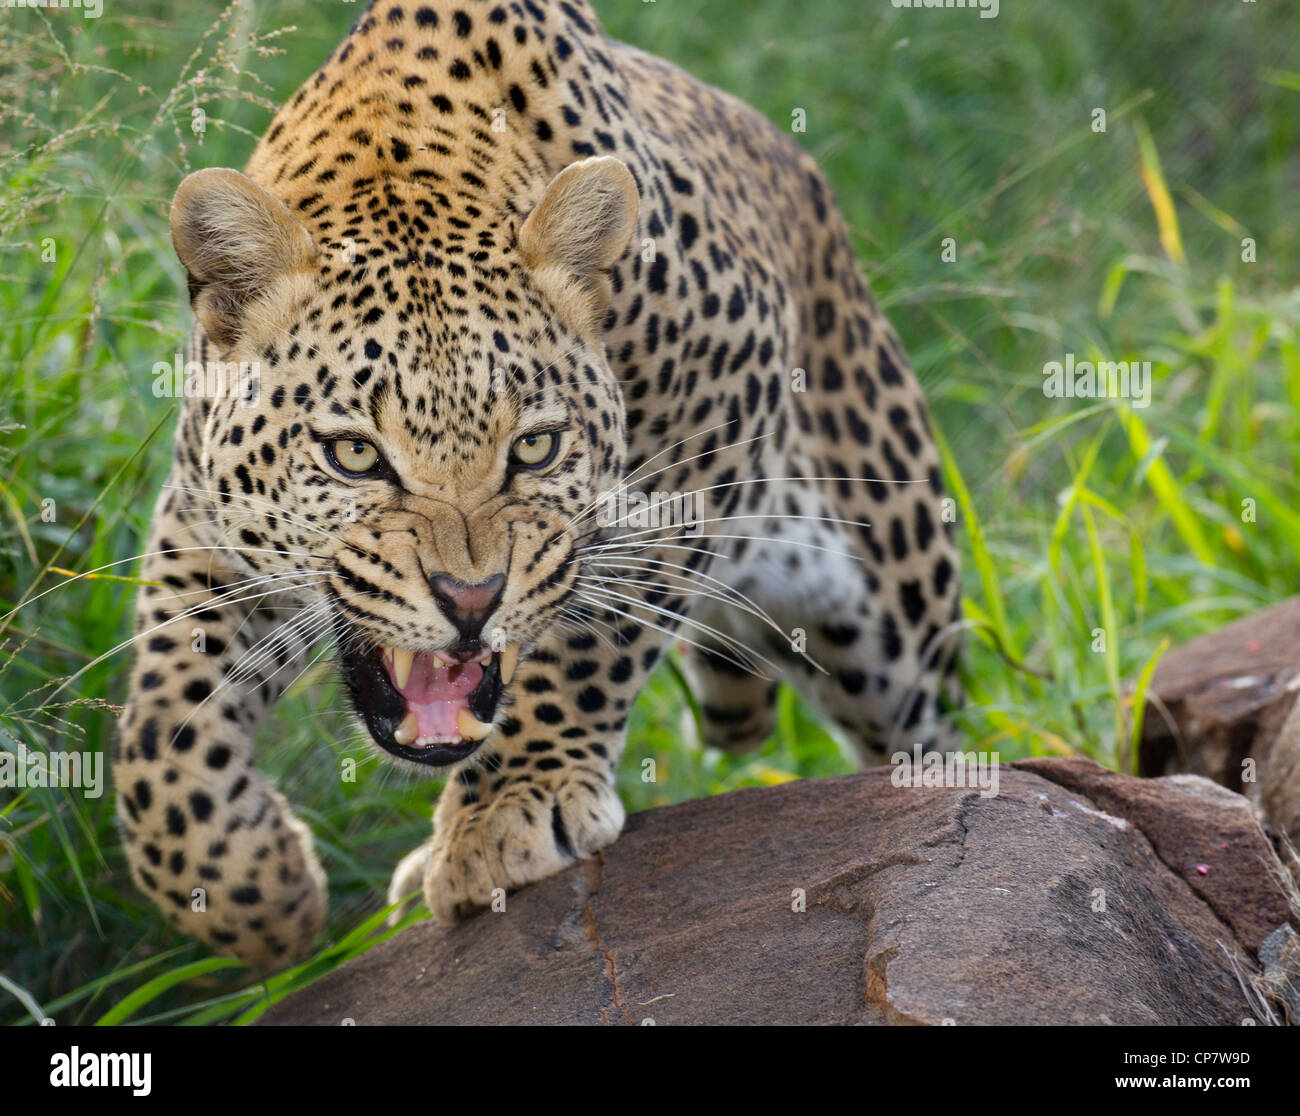 Leopardo africano (Panthera pardus) gruñendo y mostrando los dientes en forma agresiva y defensiva, Sudáfrica Foto de stock